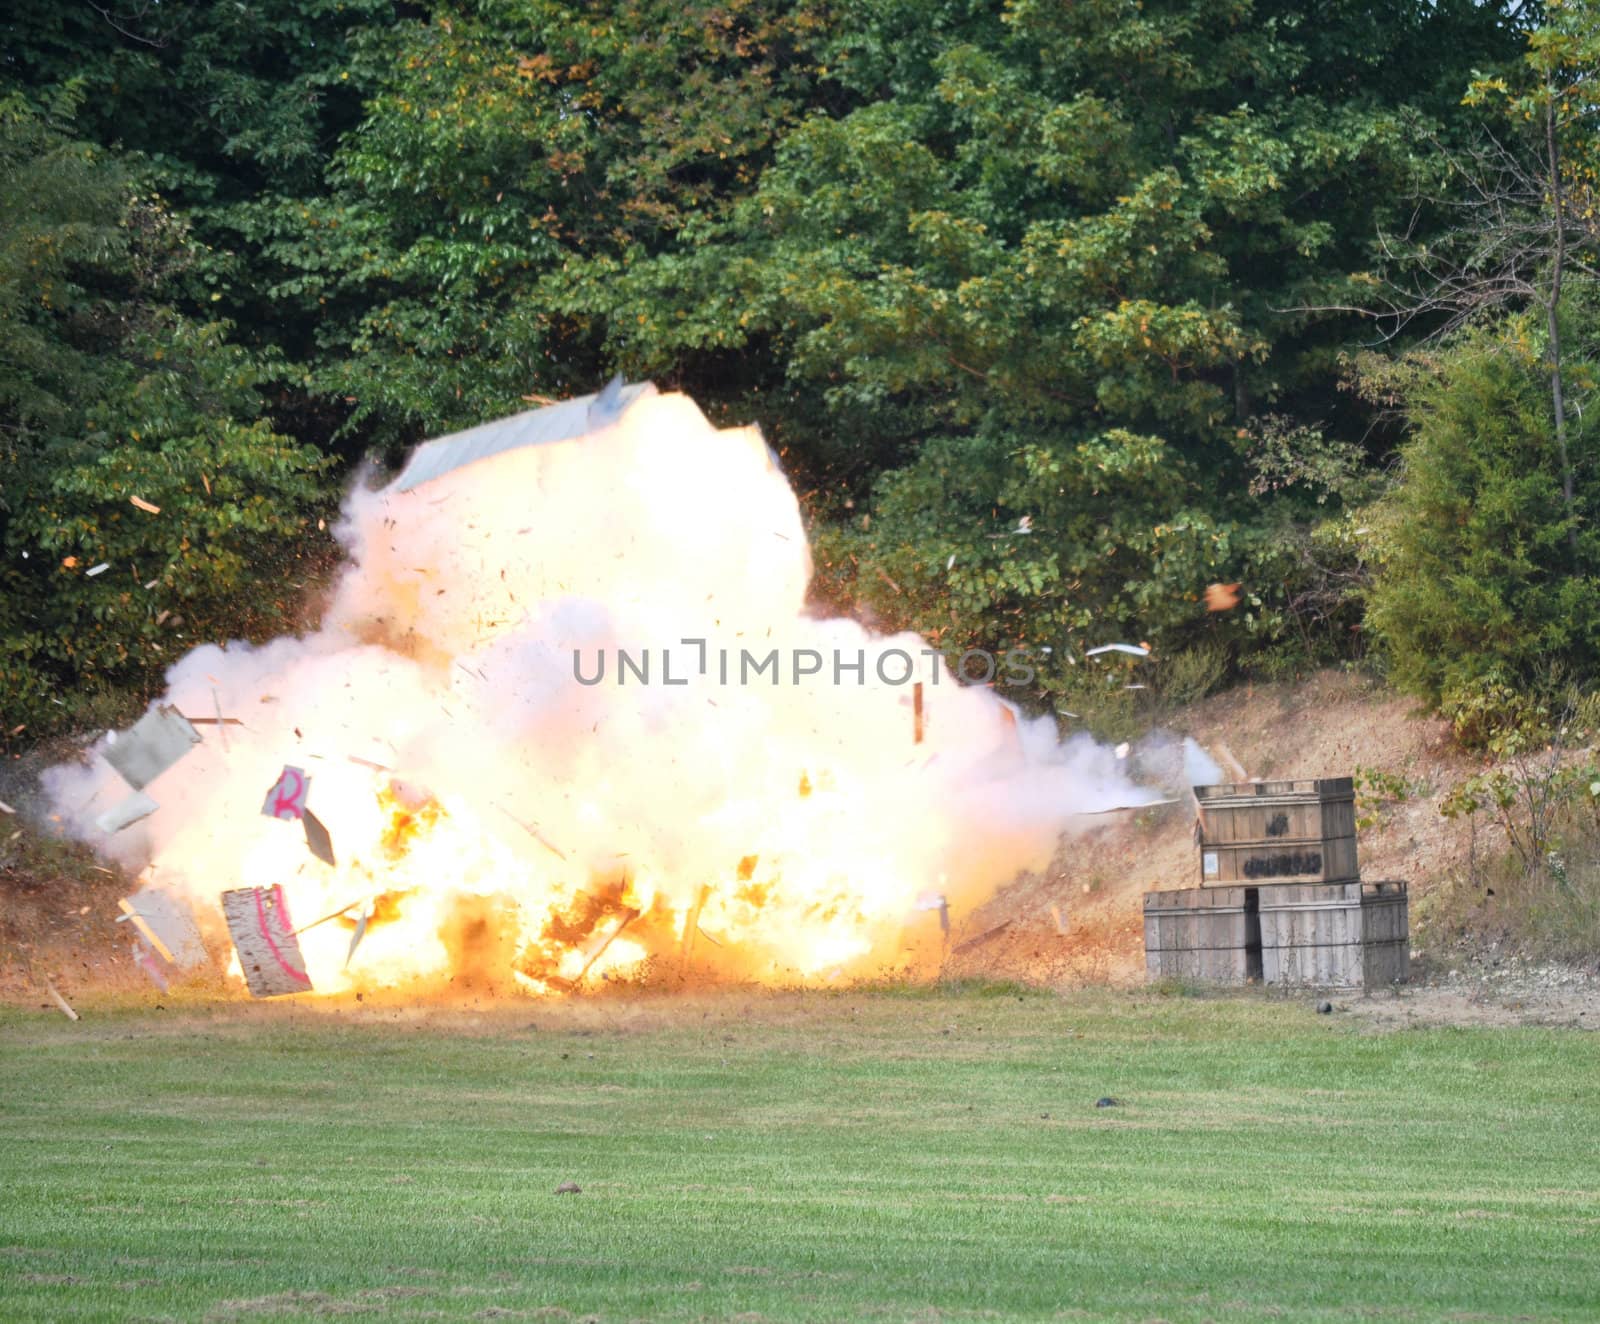 Civil War Re-enactment - explosion